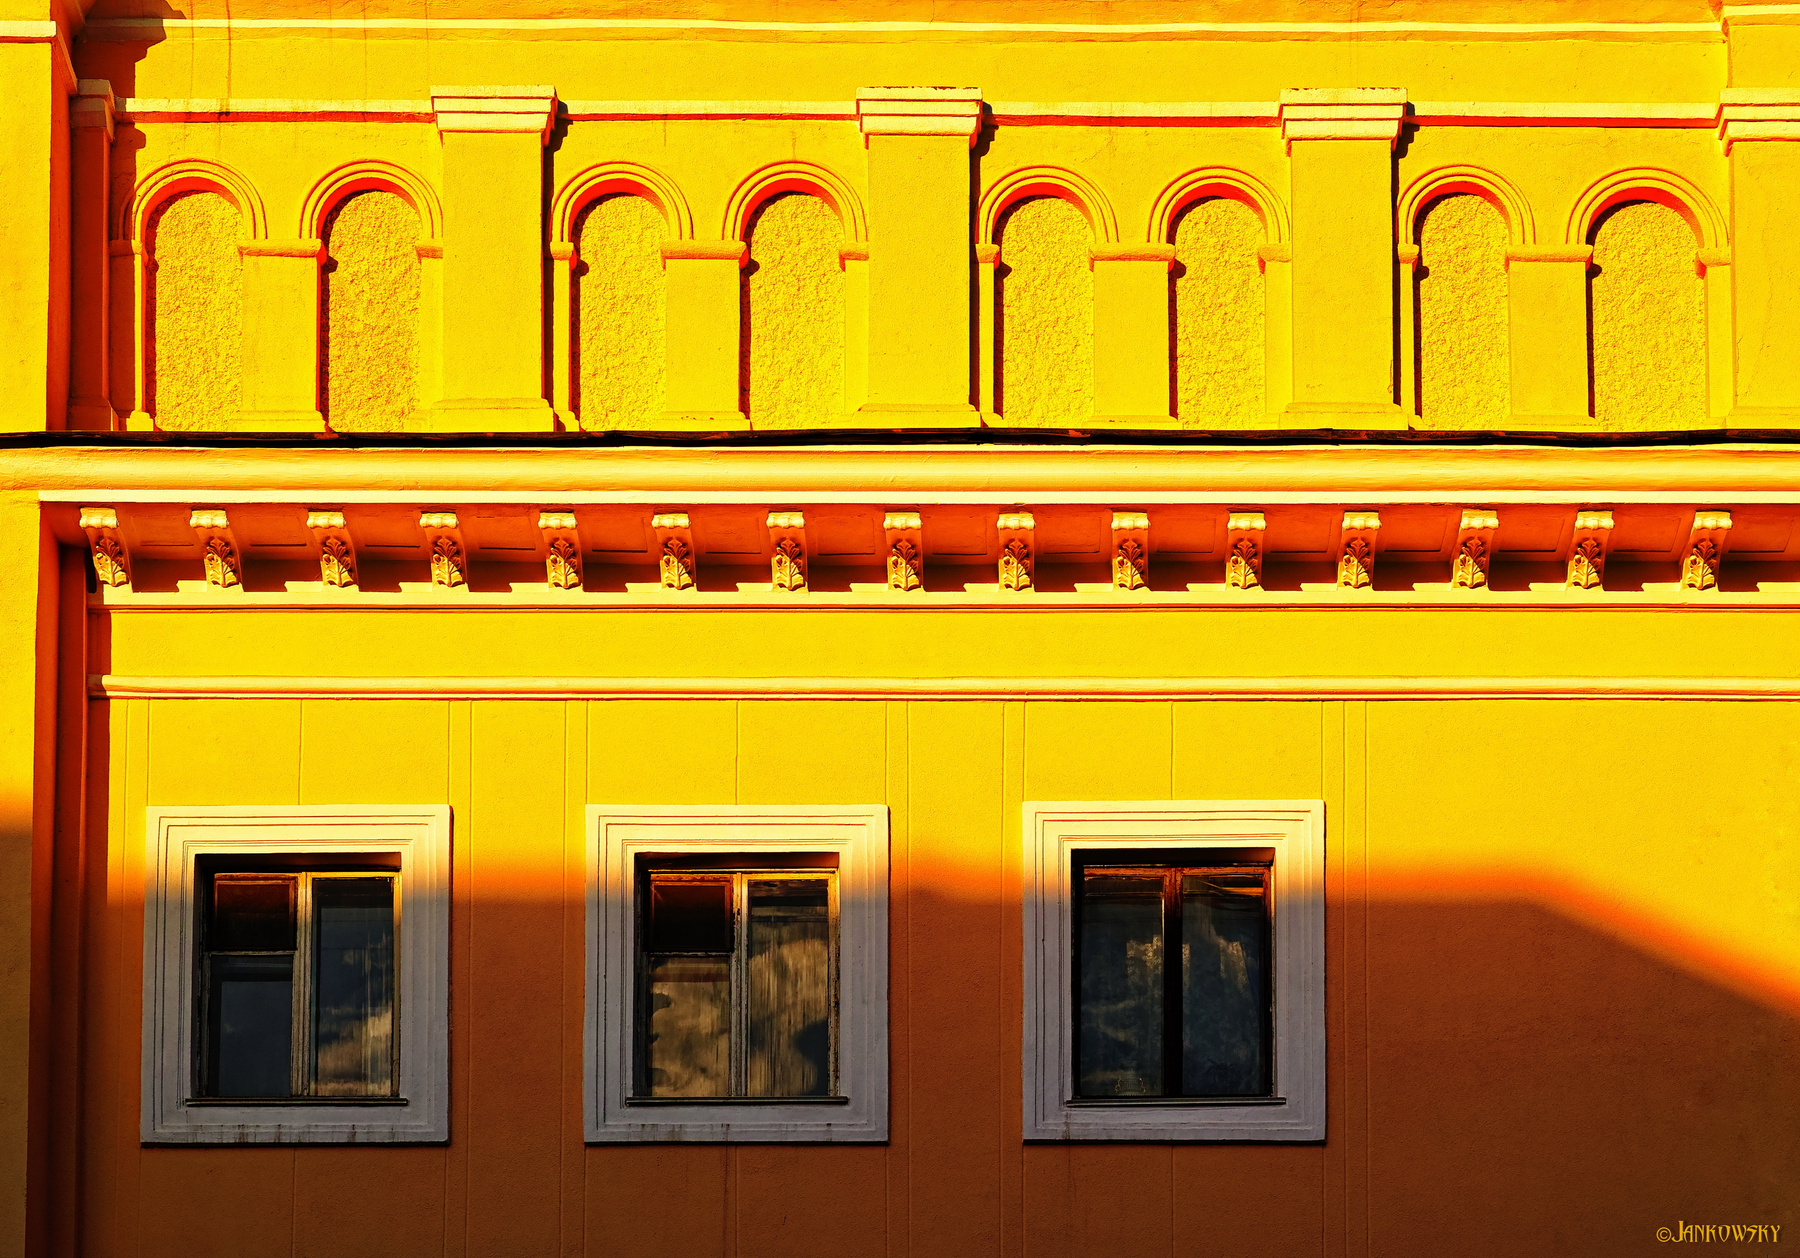 Эстетега омских фрагментов 7.06.20 омск фрагмент старый дом желтый арки три окна foveon sigma dp3 Quattro